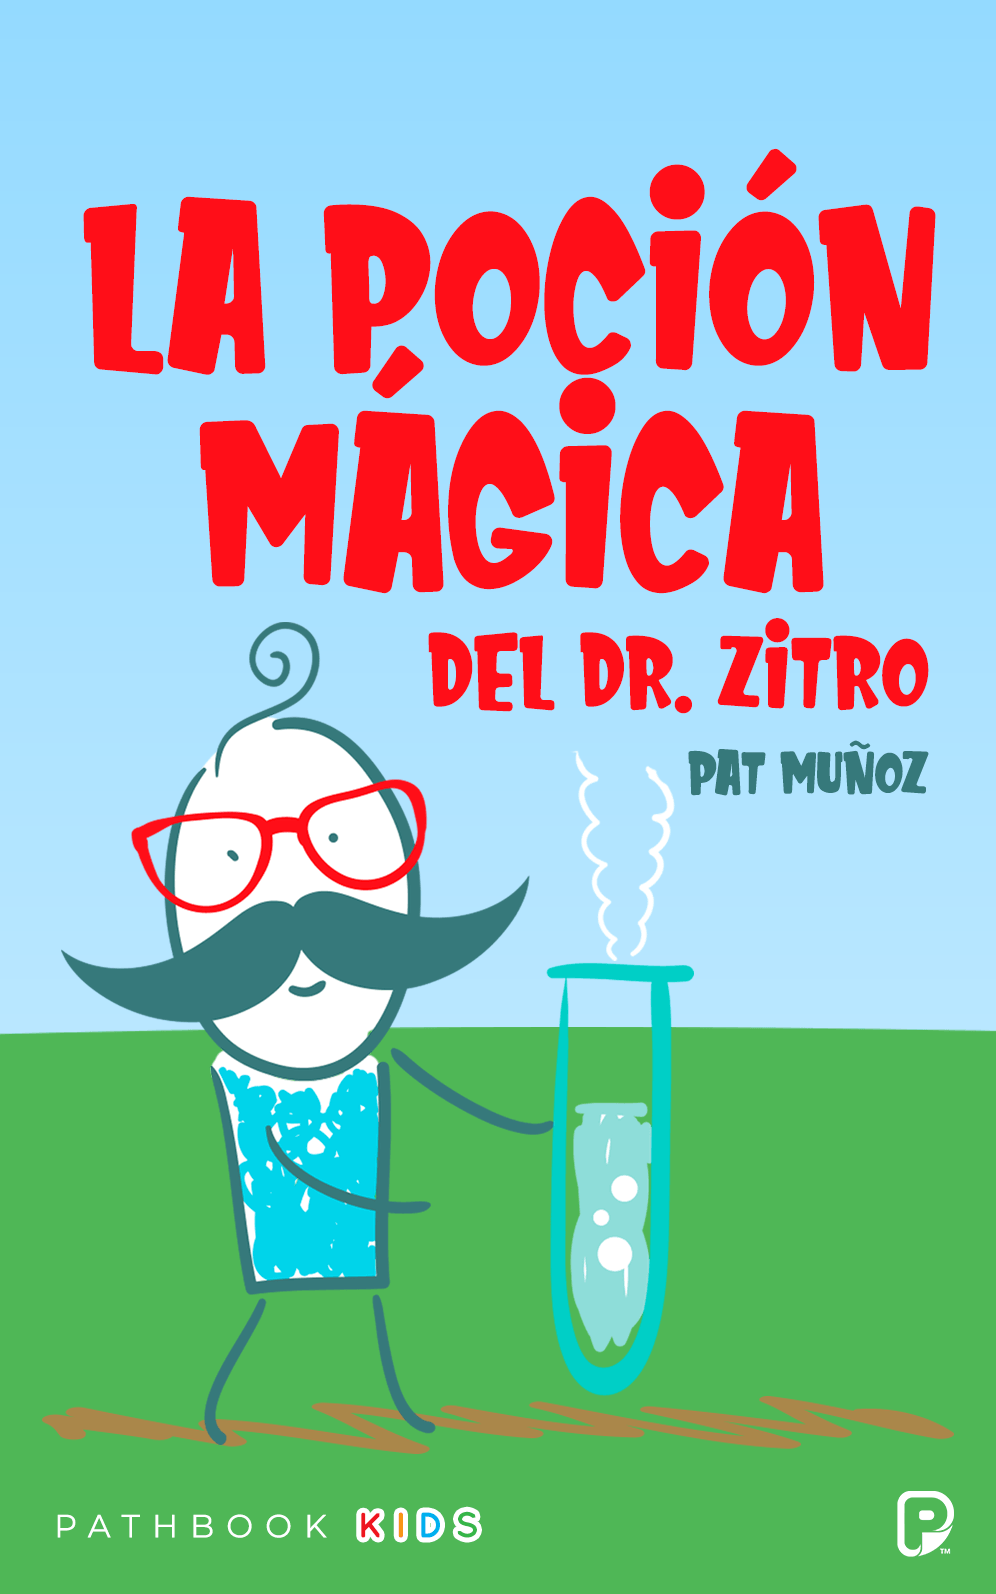 La poción mágica del Dr. Zitro